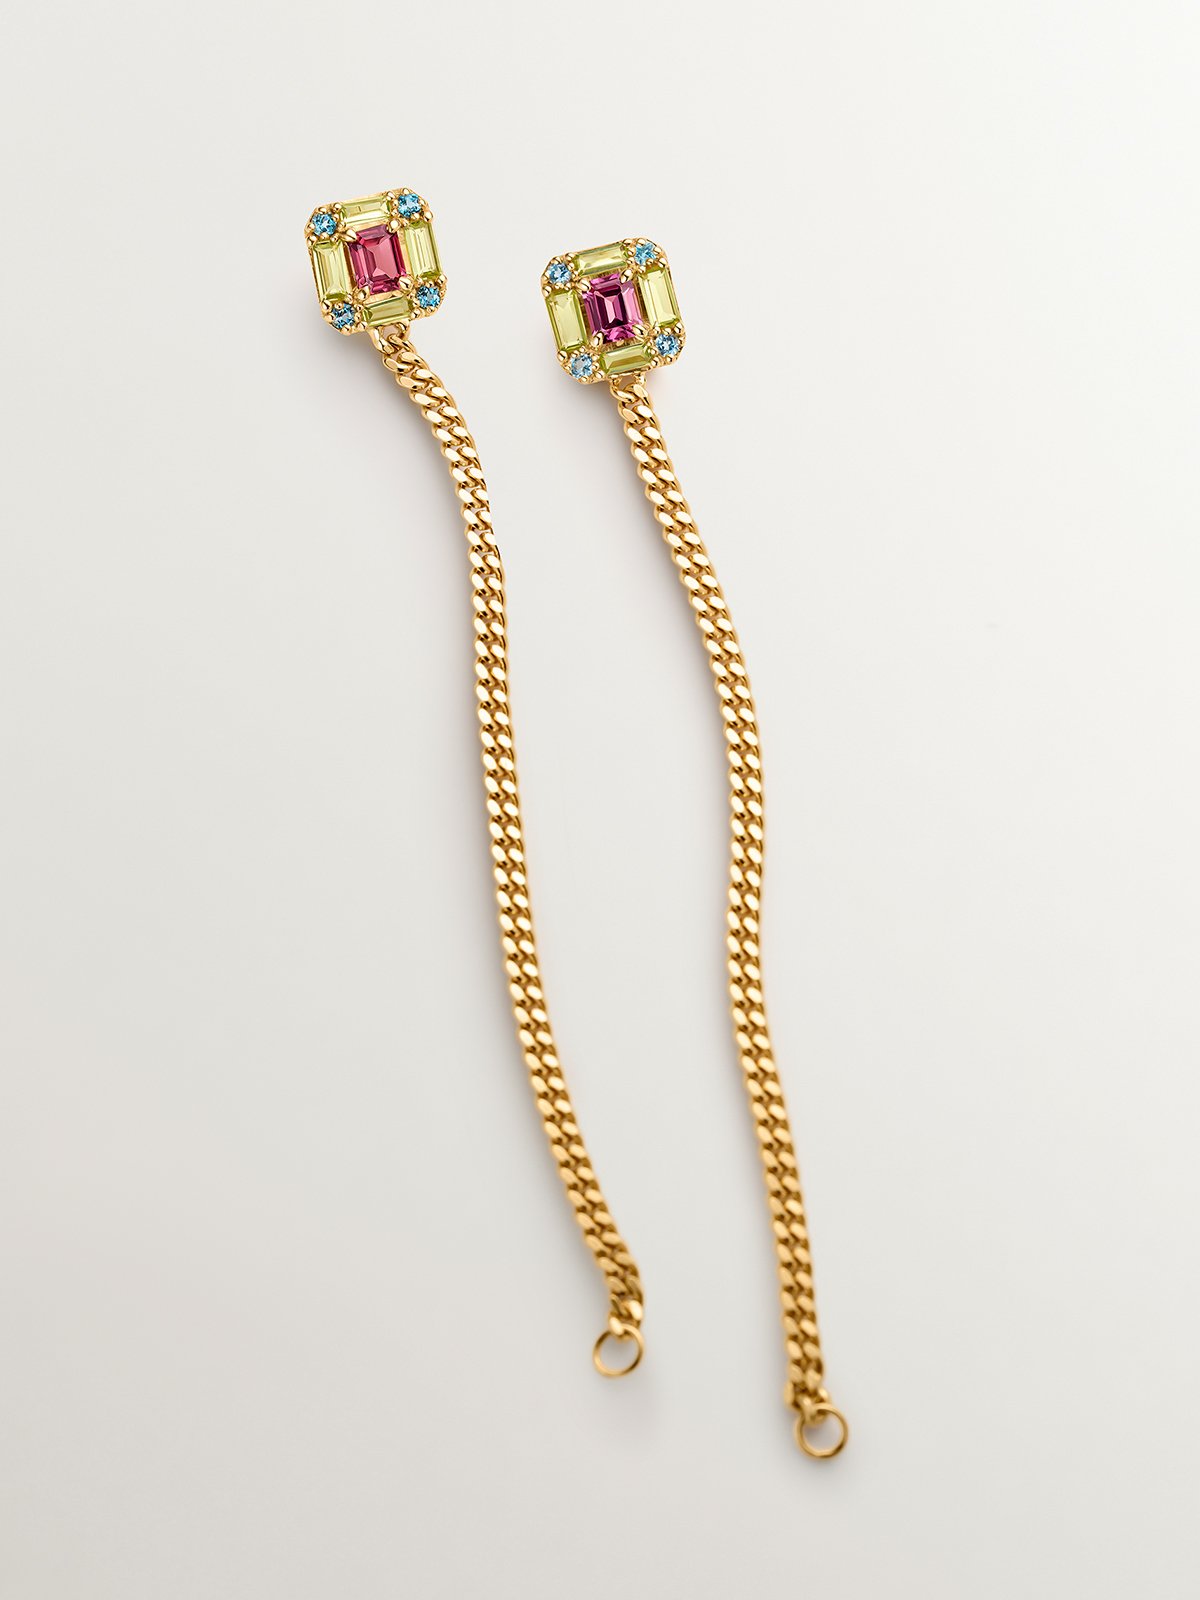 Pendientes largos cadena de plata 925 bañada en oro amarillo de 18K con peridotos, topacios y rodolitas